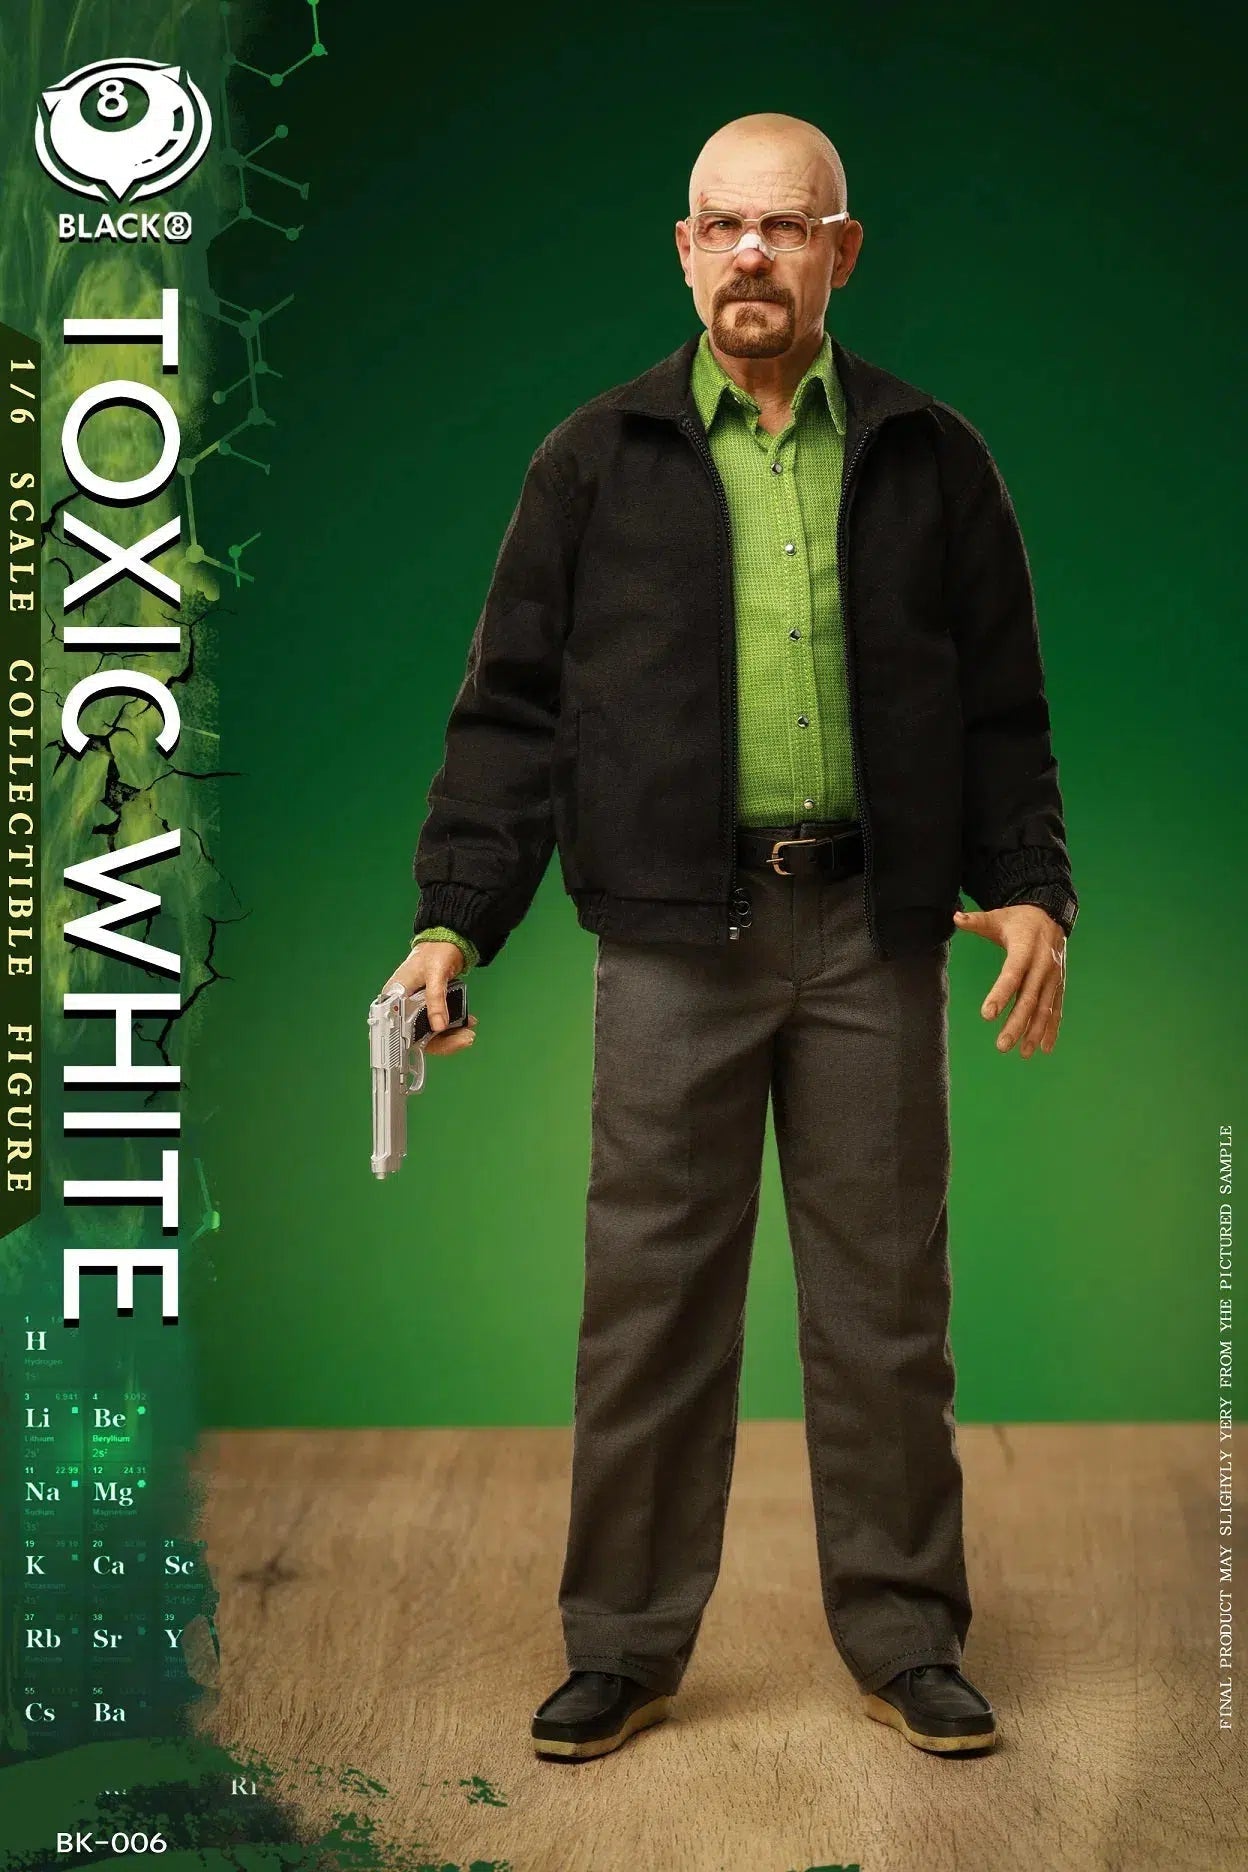 Toxic White: Black 8 Toys: Sixth Scale Figure Black 8 Toys